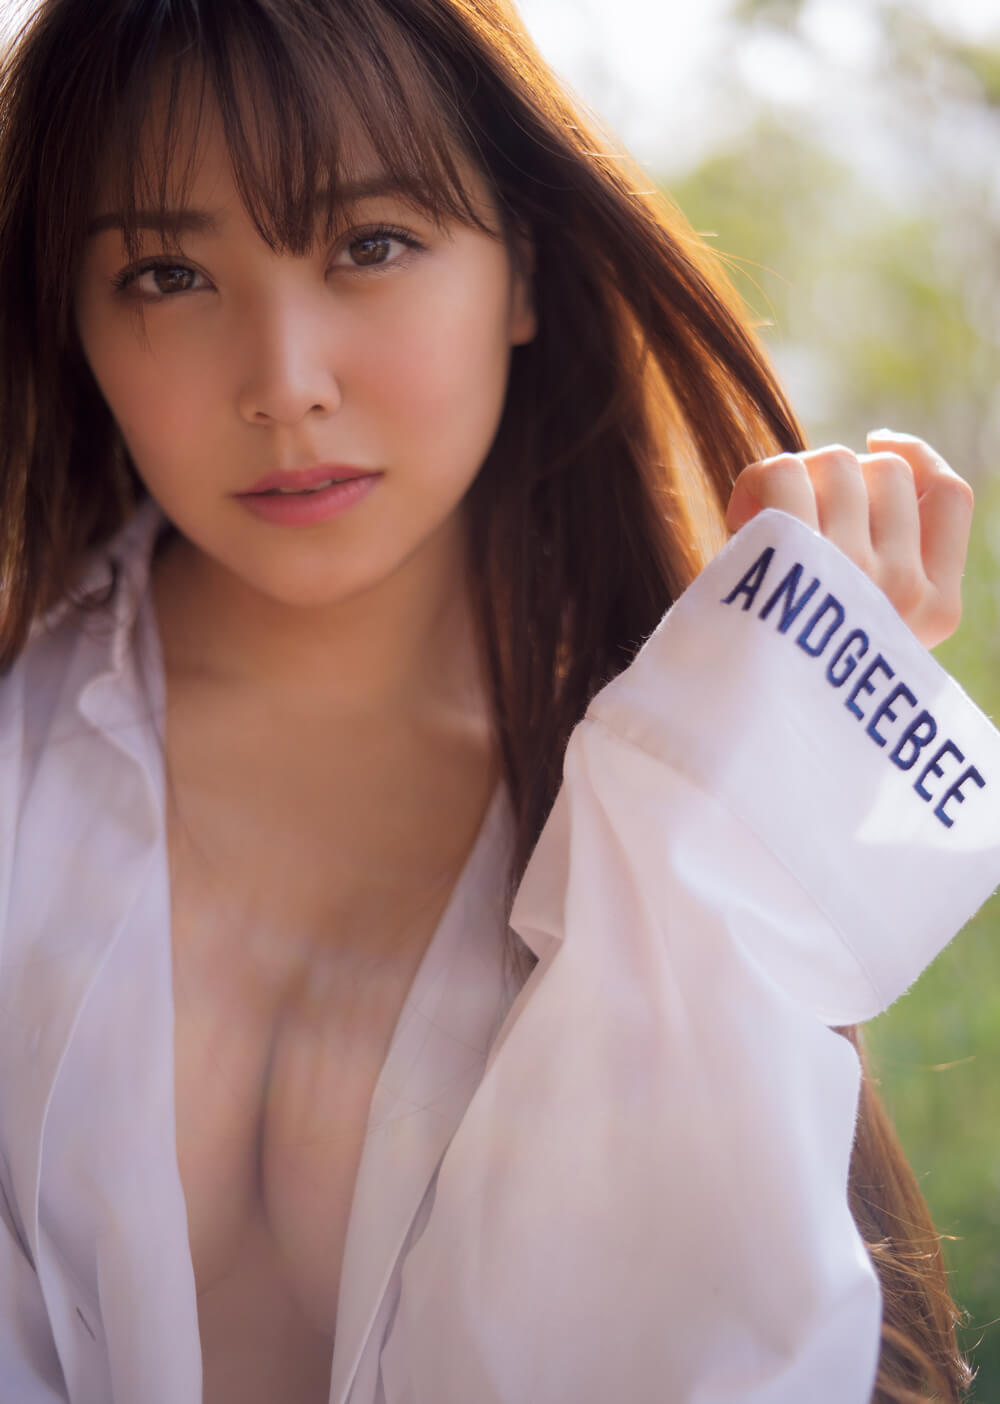 同じNMB48の村瀬紗英ちゃんプロデュースのアパレルブランド「ANDGEEBEE」の衣装でセクシーショット